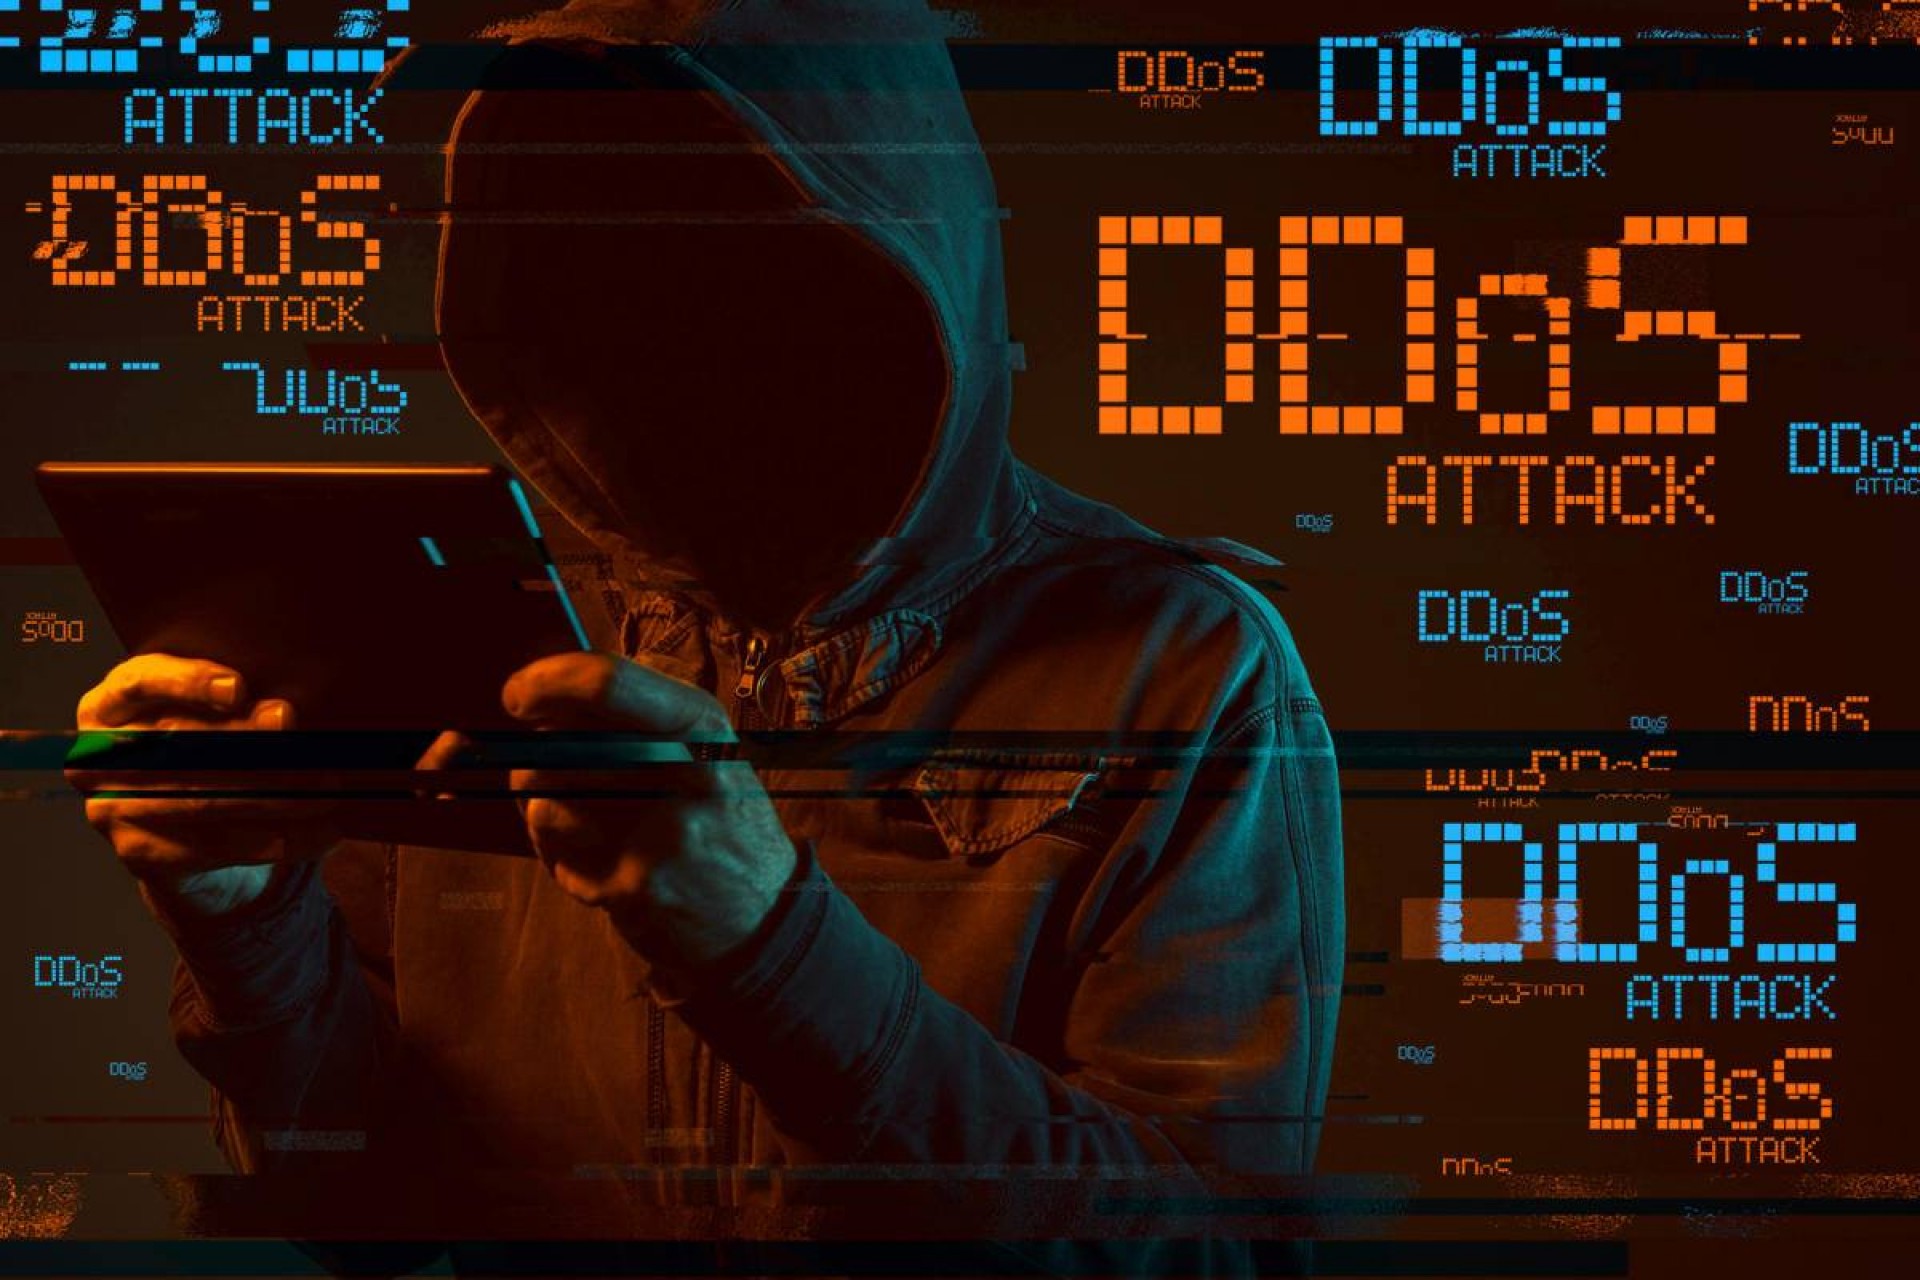 Nền tảng học – thi trực tuyến 789.vn liên tiếp bị tấn công DDoS